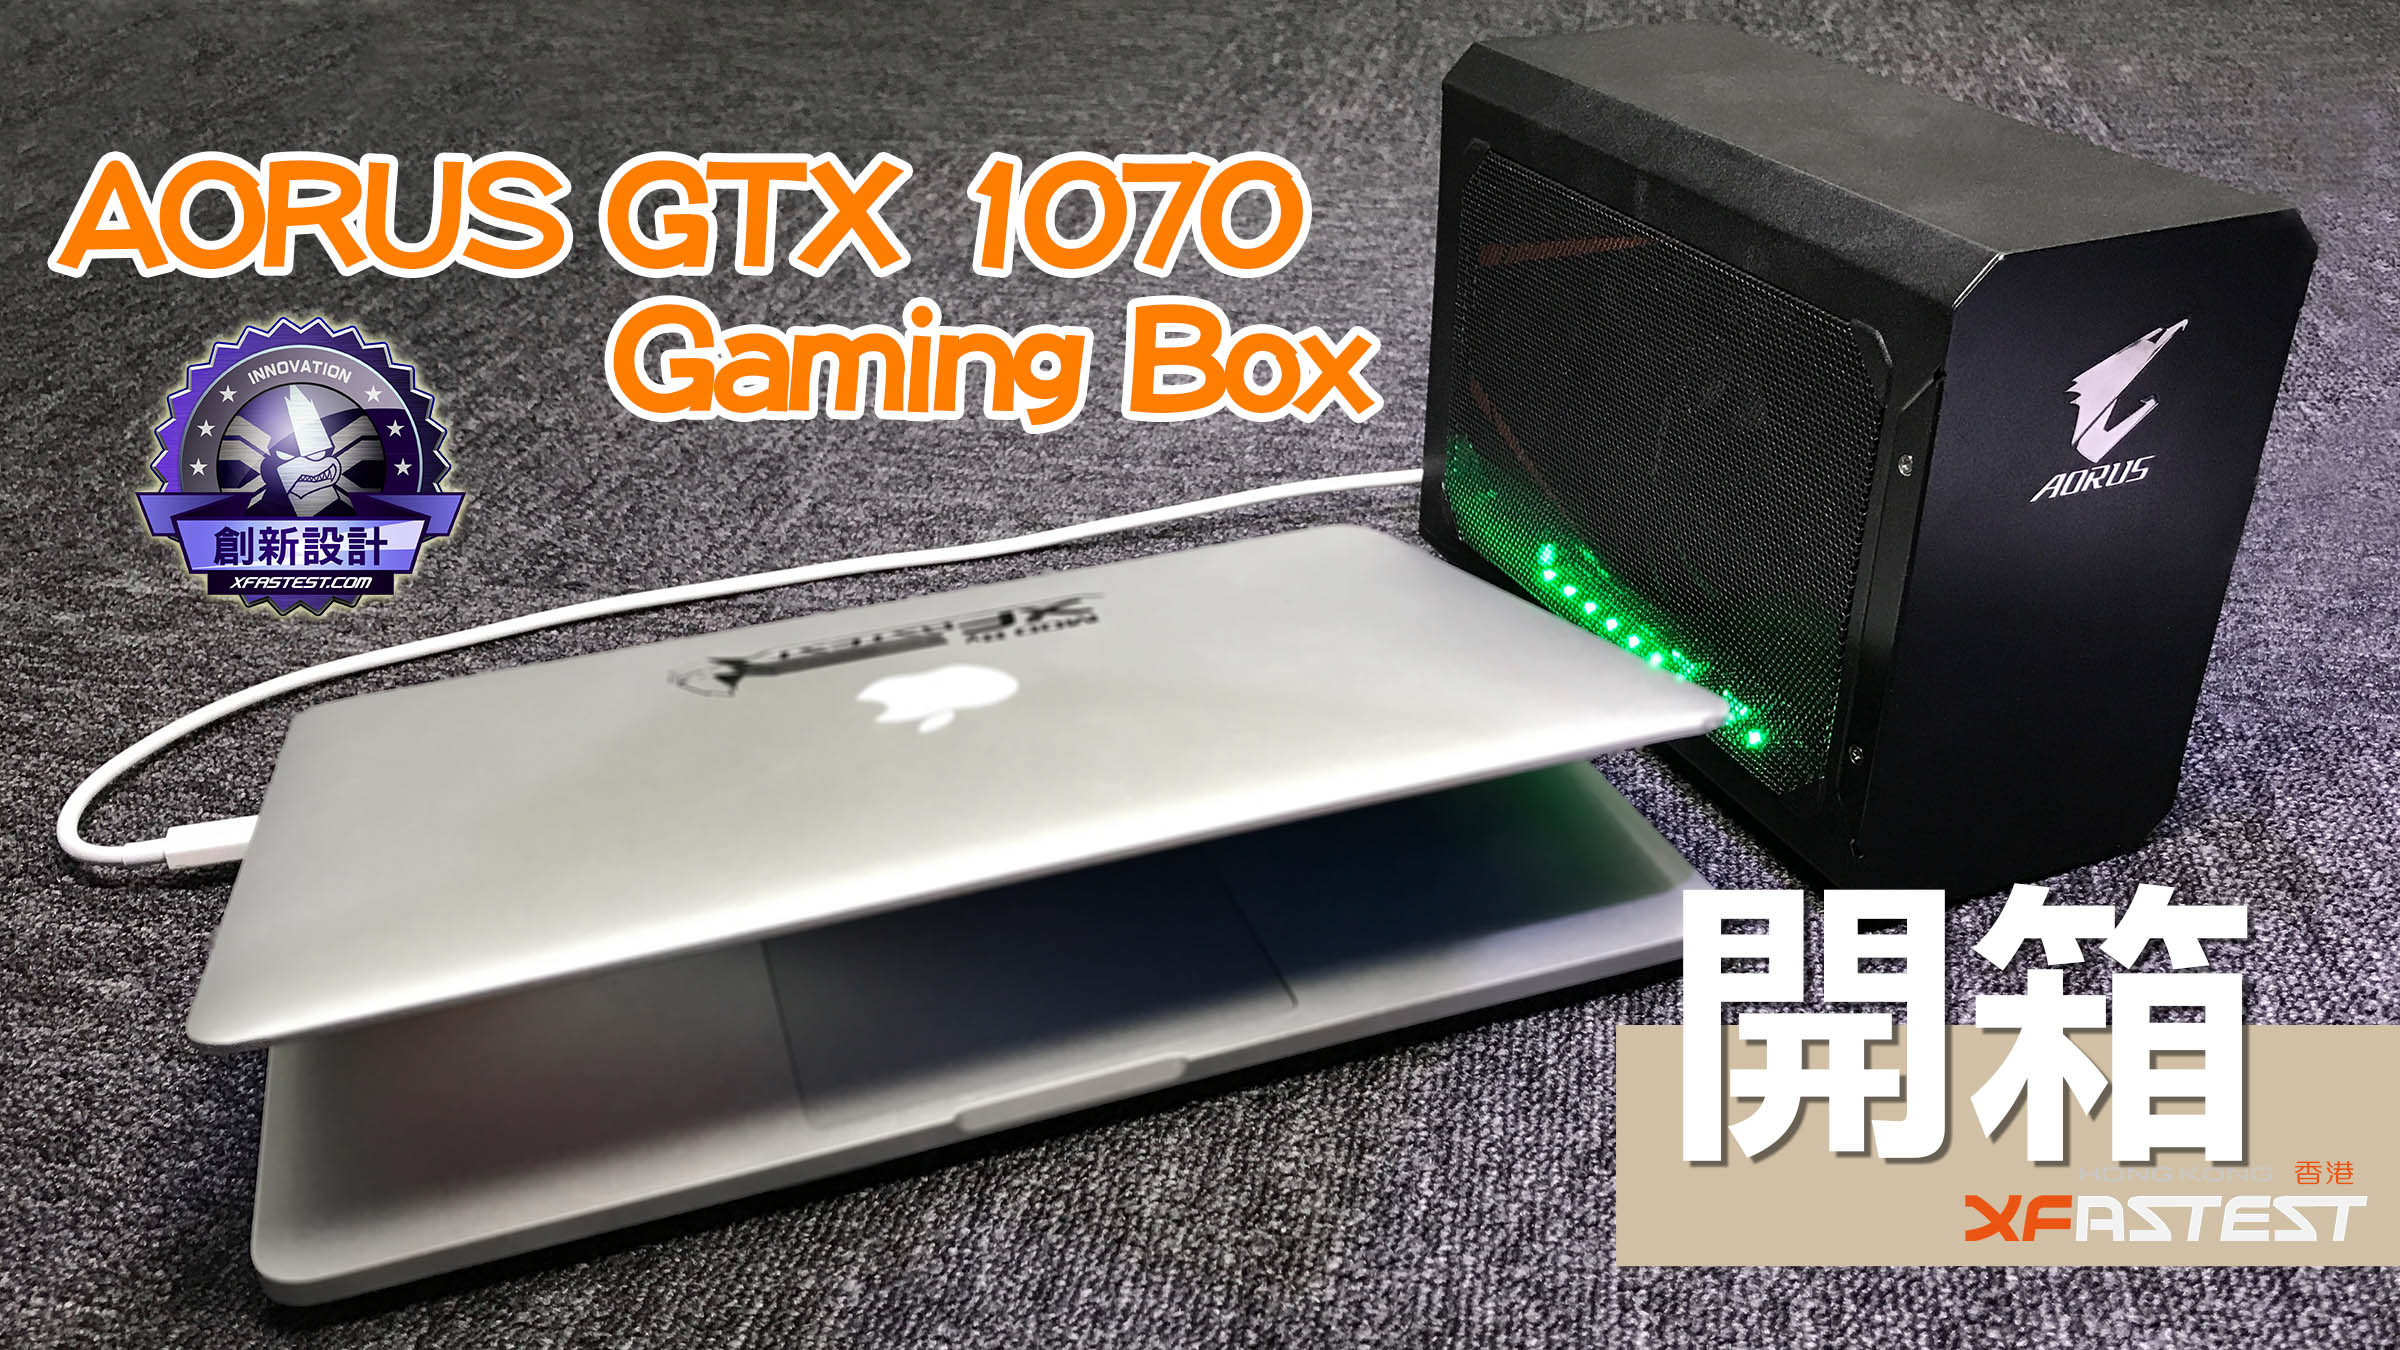 XF 開箱] 輕鬆提升電腦圖像處理能力AORUS GTX 1070 Gaming Box